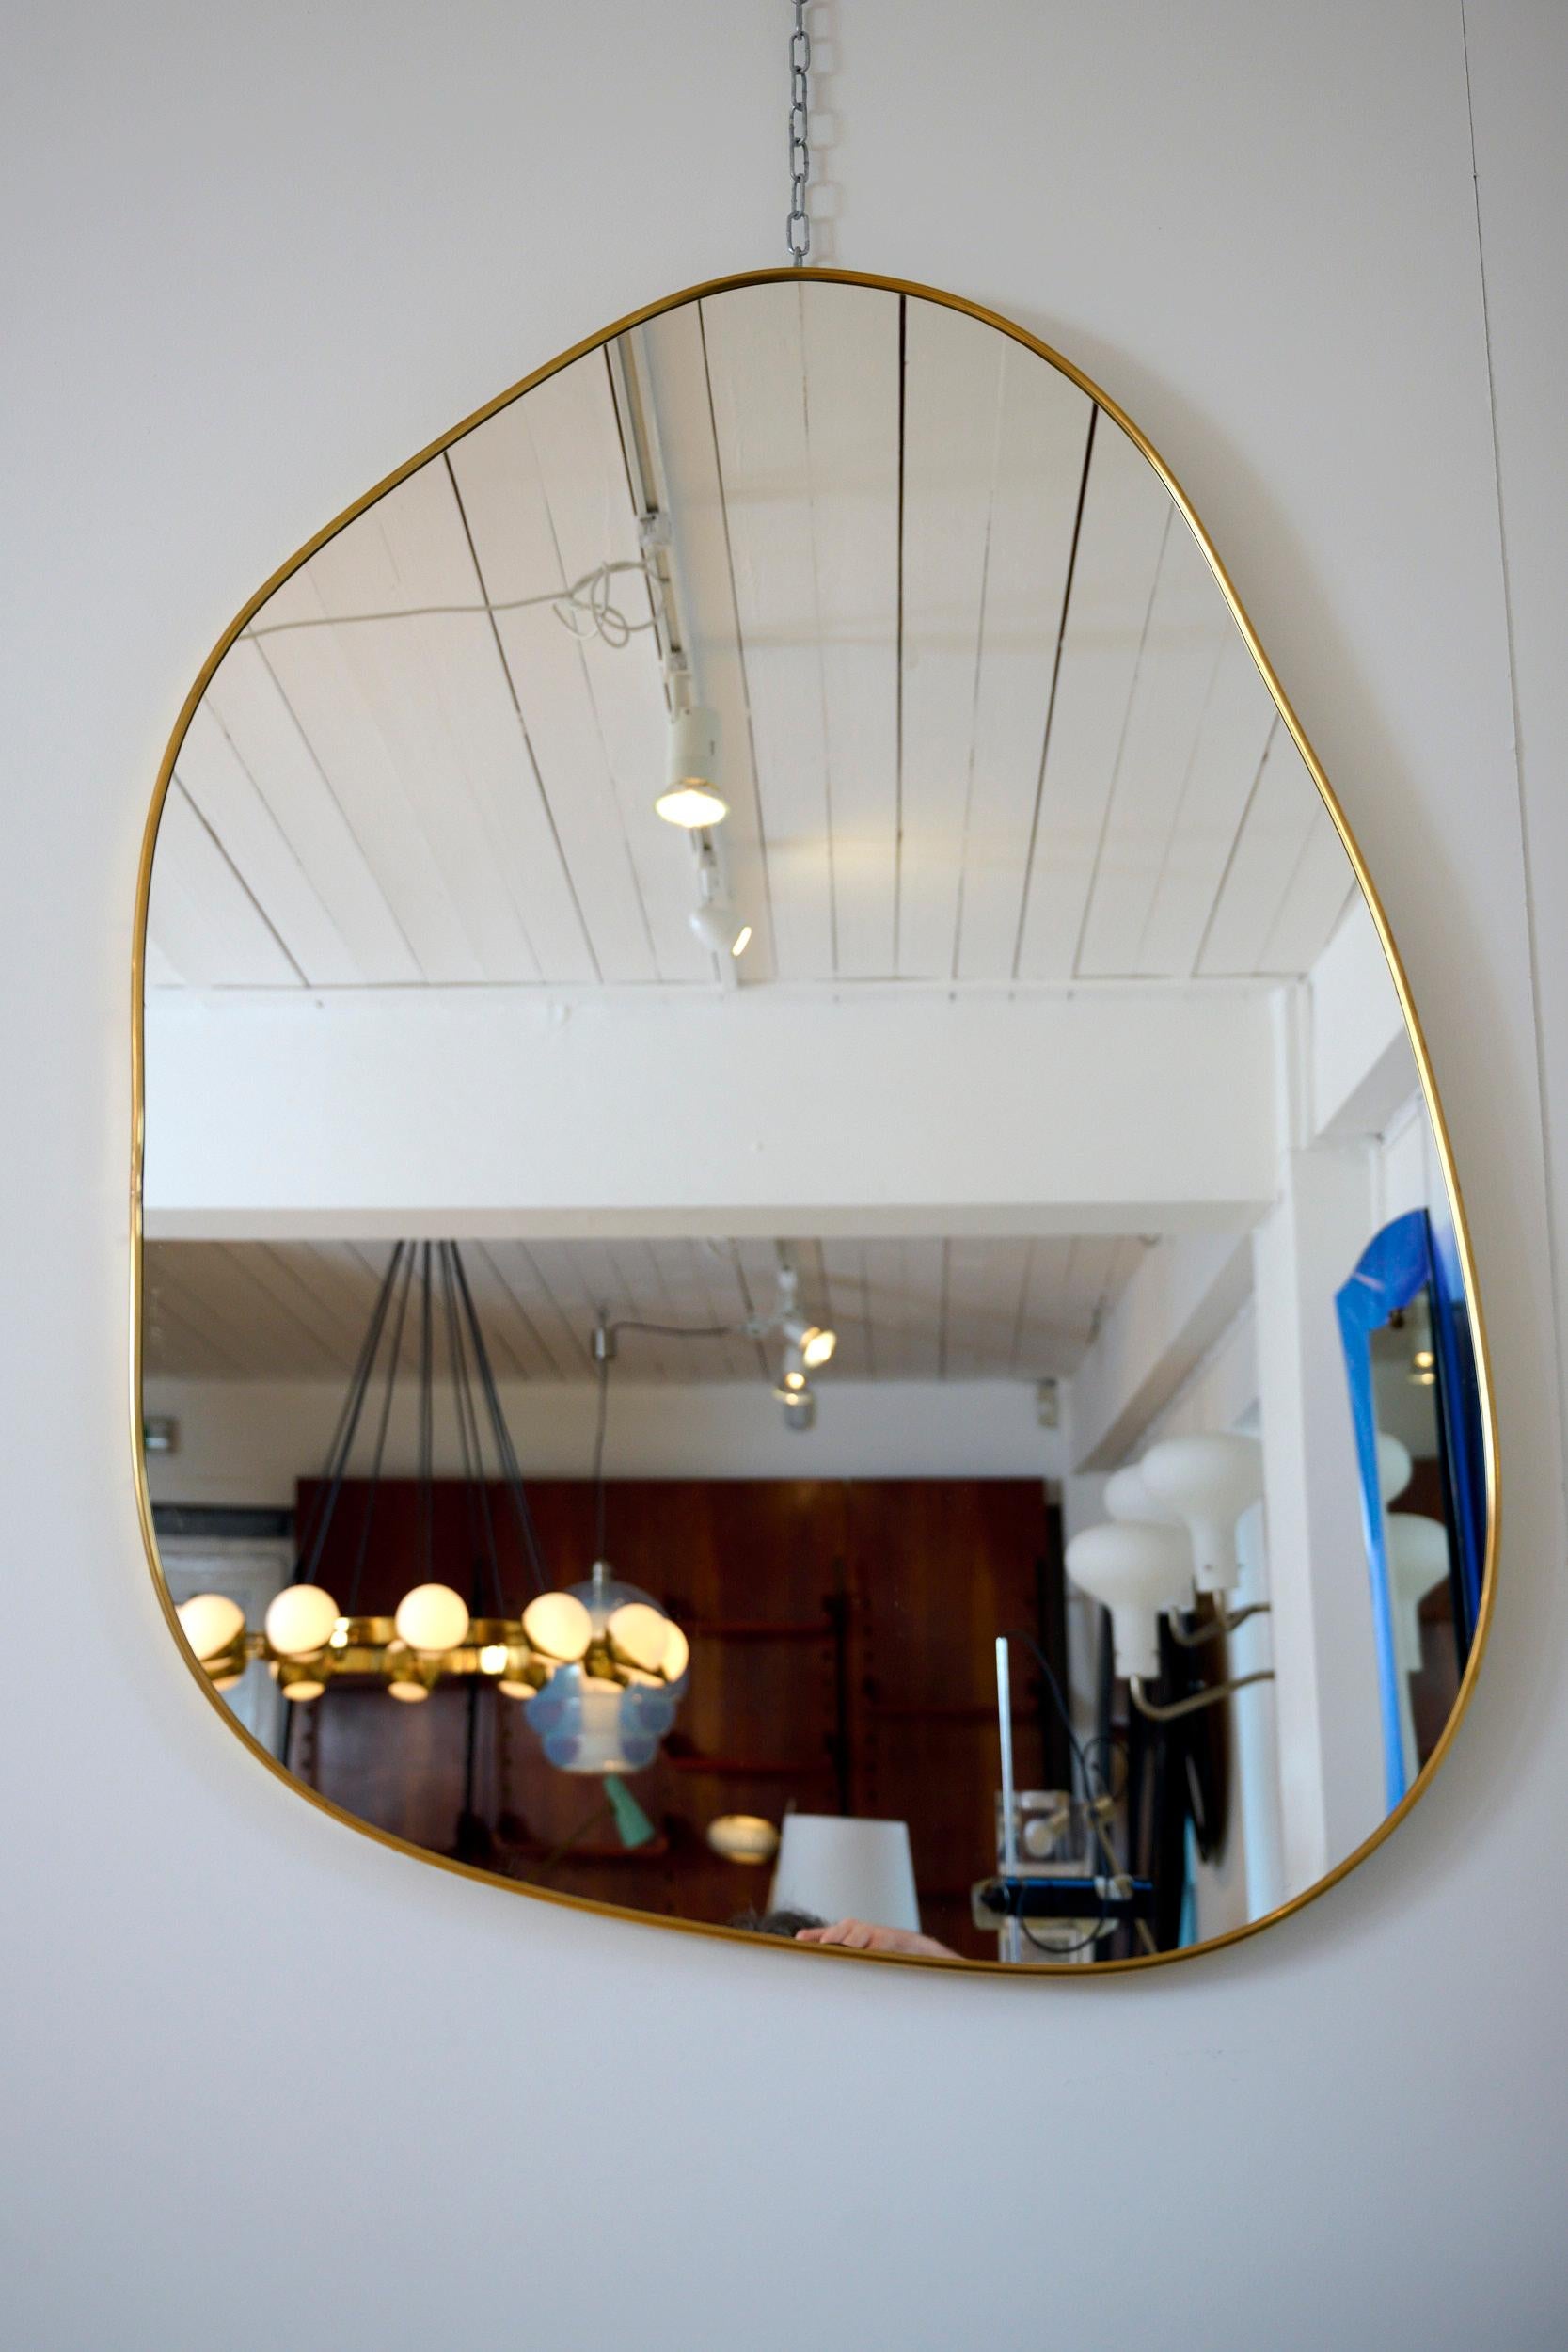 Miroir organique contemporain incurvé avec cadre en laiton.

Le design est celui des miroirs italiens à cadre en laiton des années 1950, mais avec une forme organique moderne. 

Des versions plus grandes et plus petites sont disponibles.